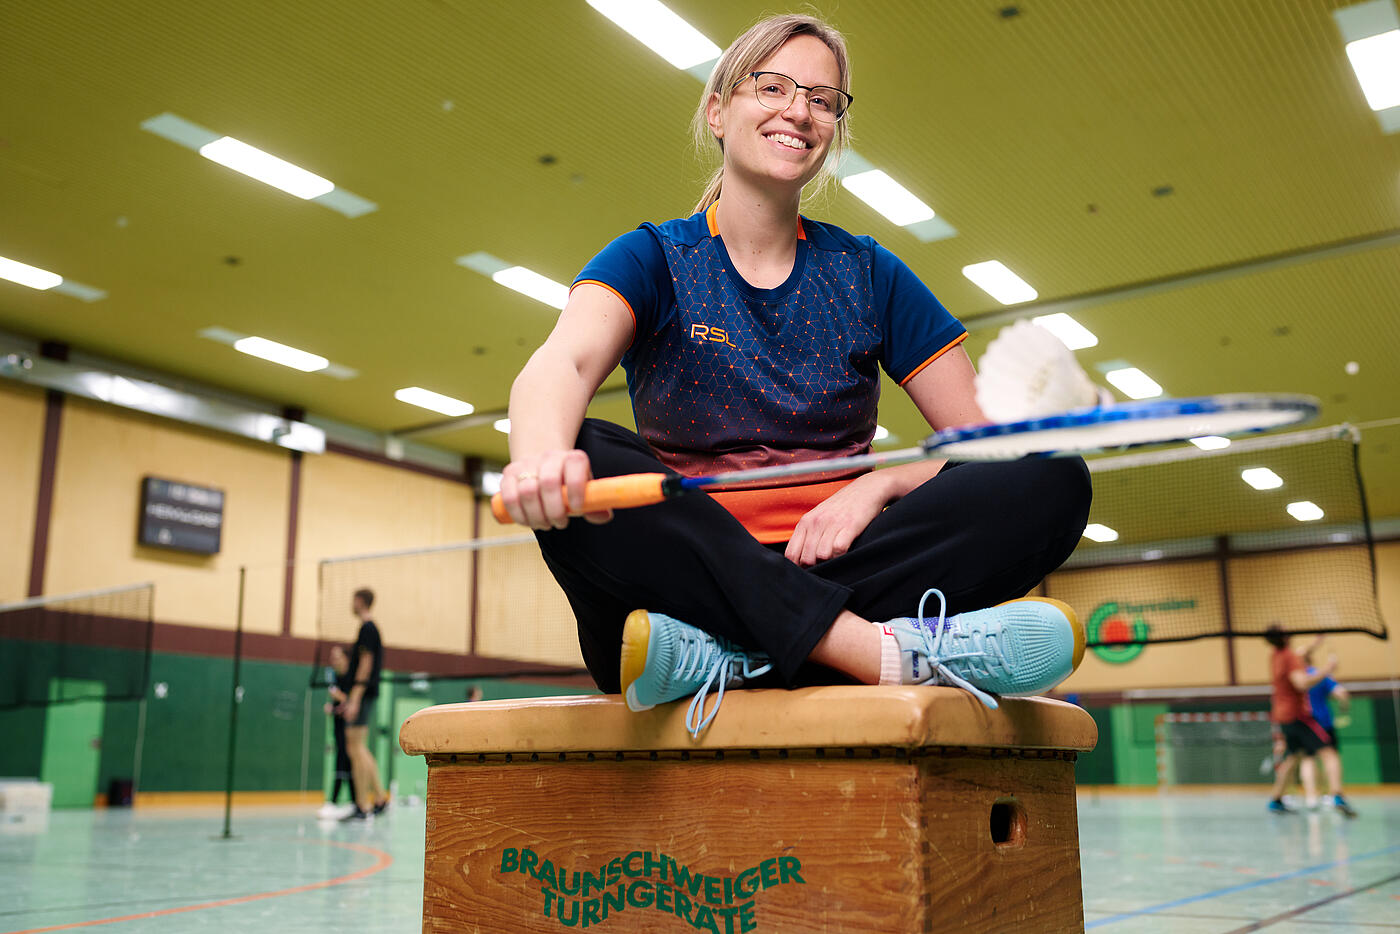 Eine Mitarbeiterin von visuellverstehen sitzt in Sportkleidung in einer Turnhalle und lächelt. Sie hält einen Badmintonschläger in der Hand.